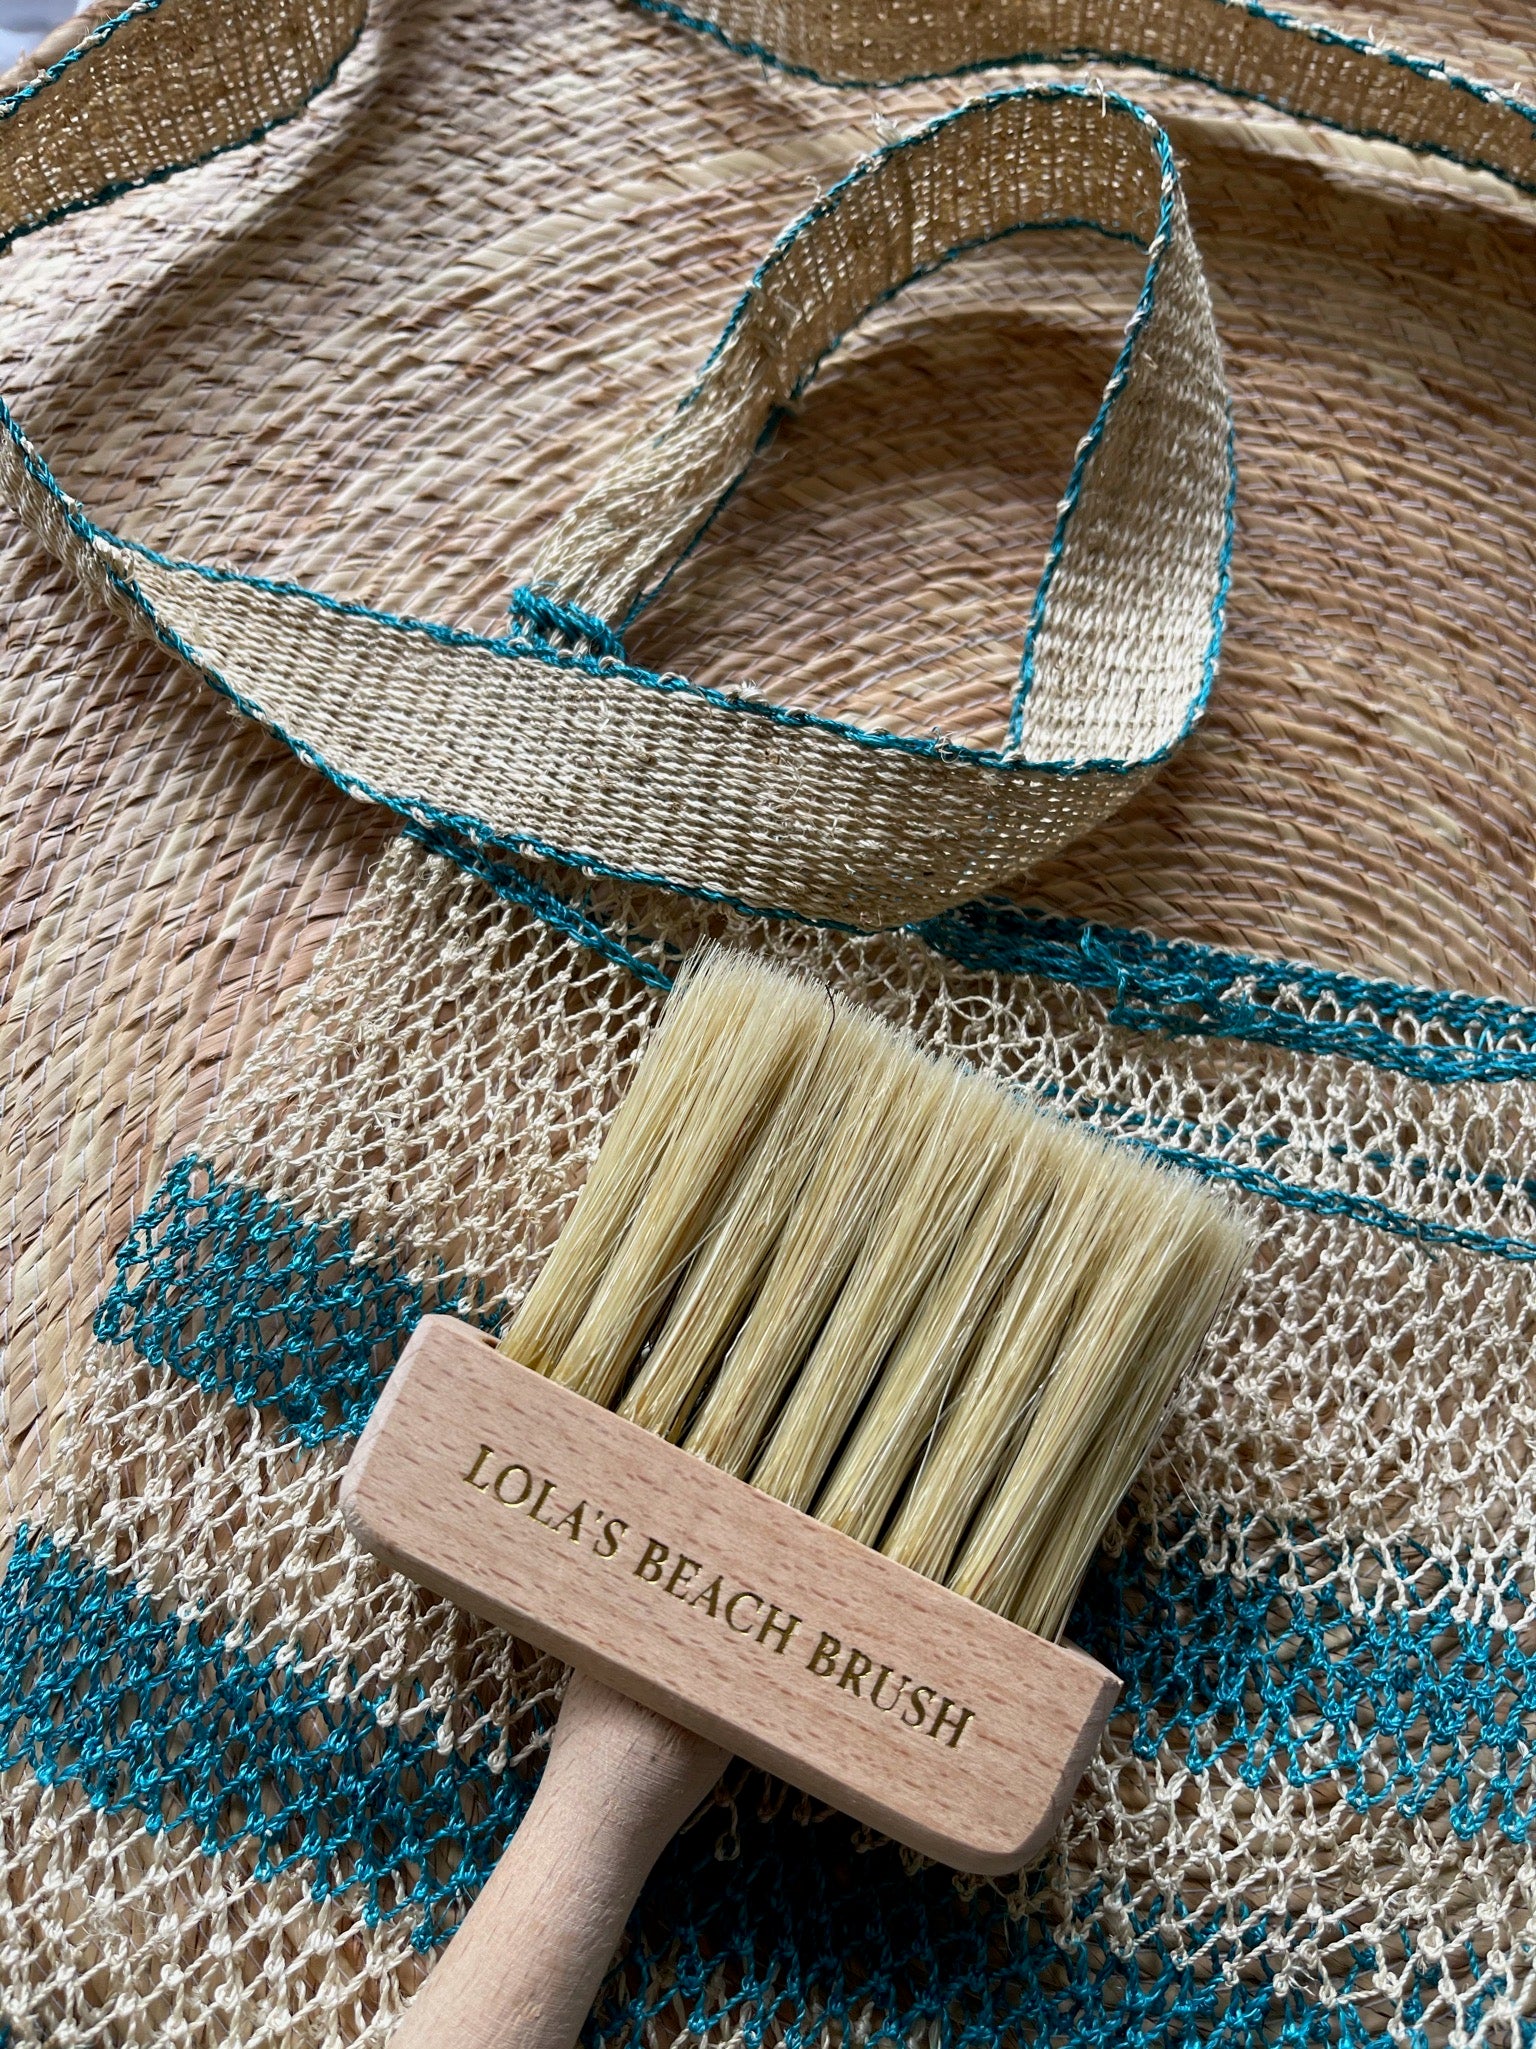 Lola's Beach Brushes